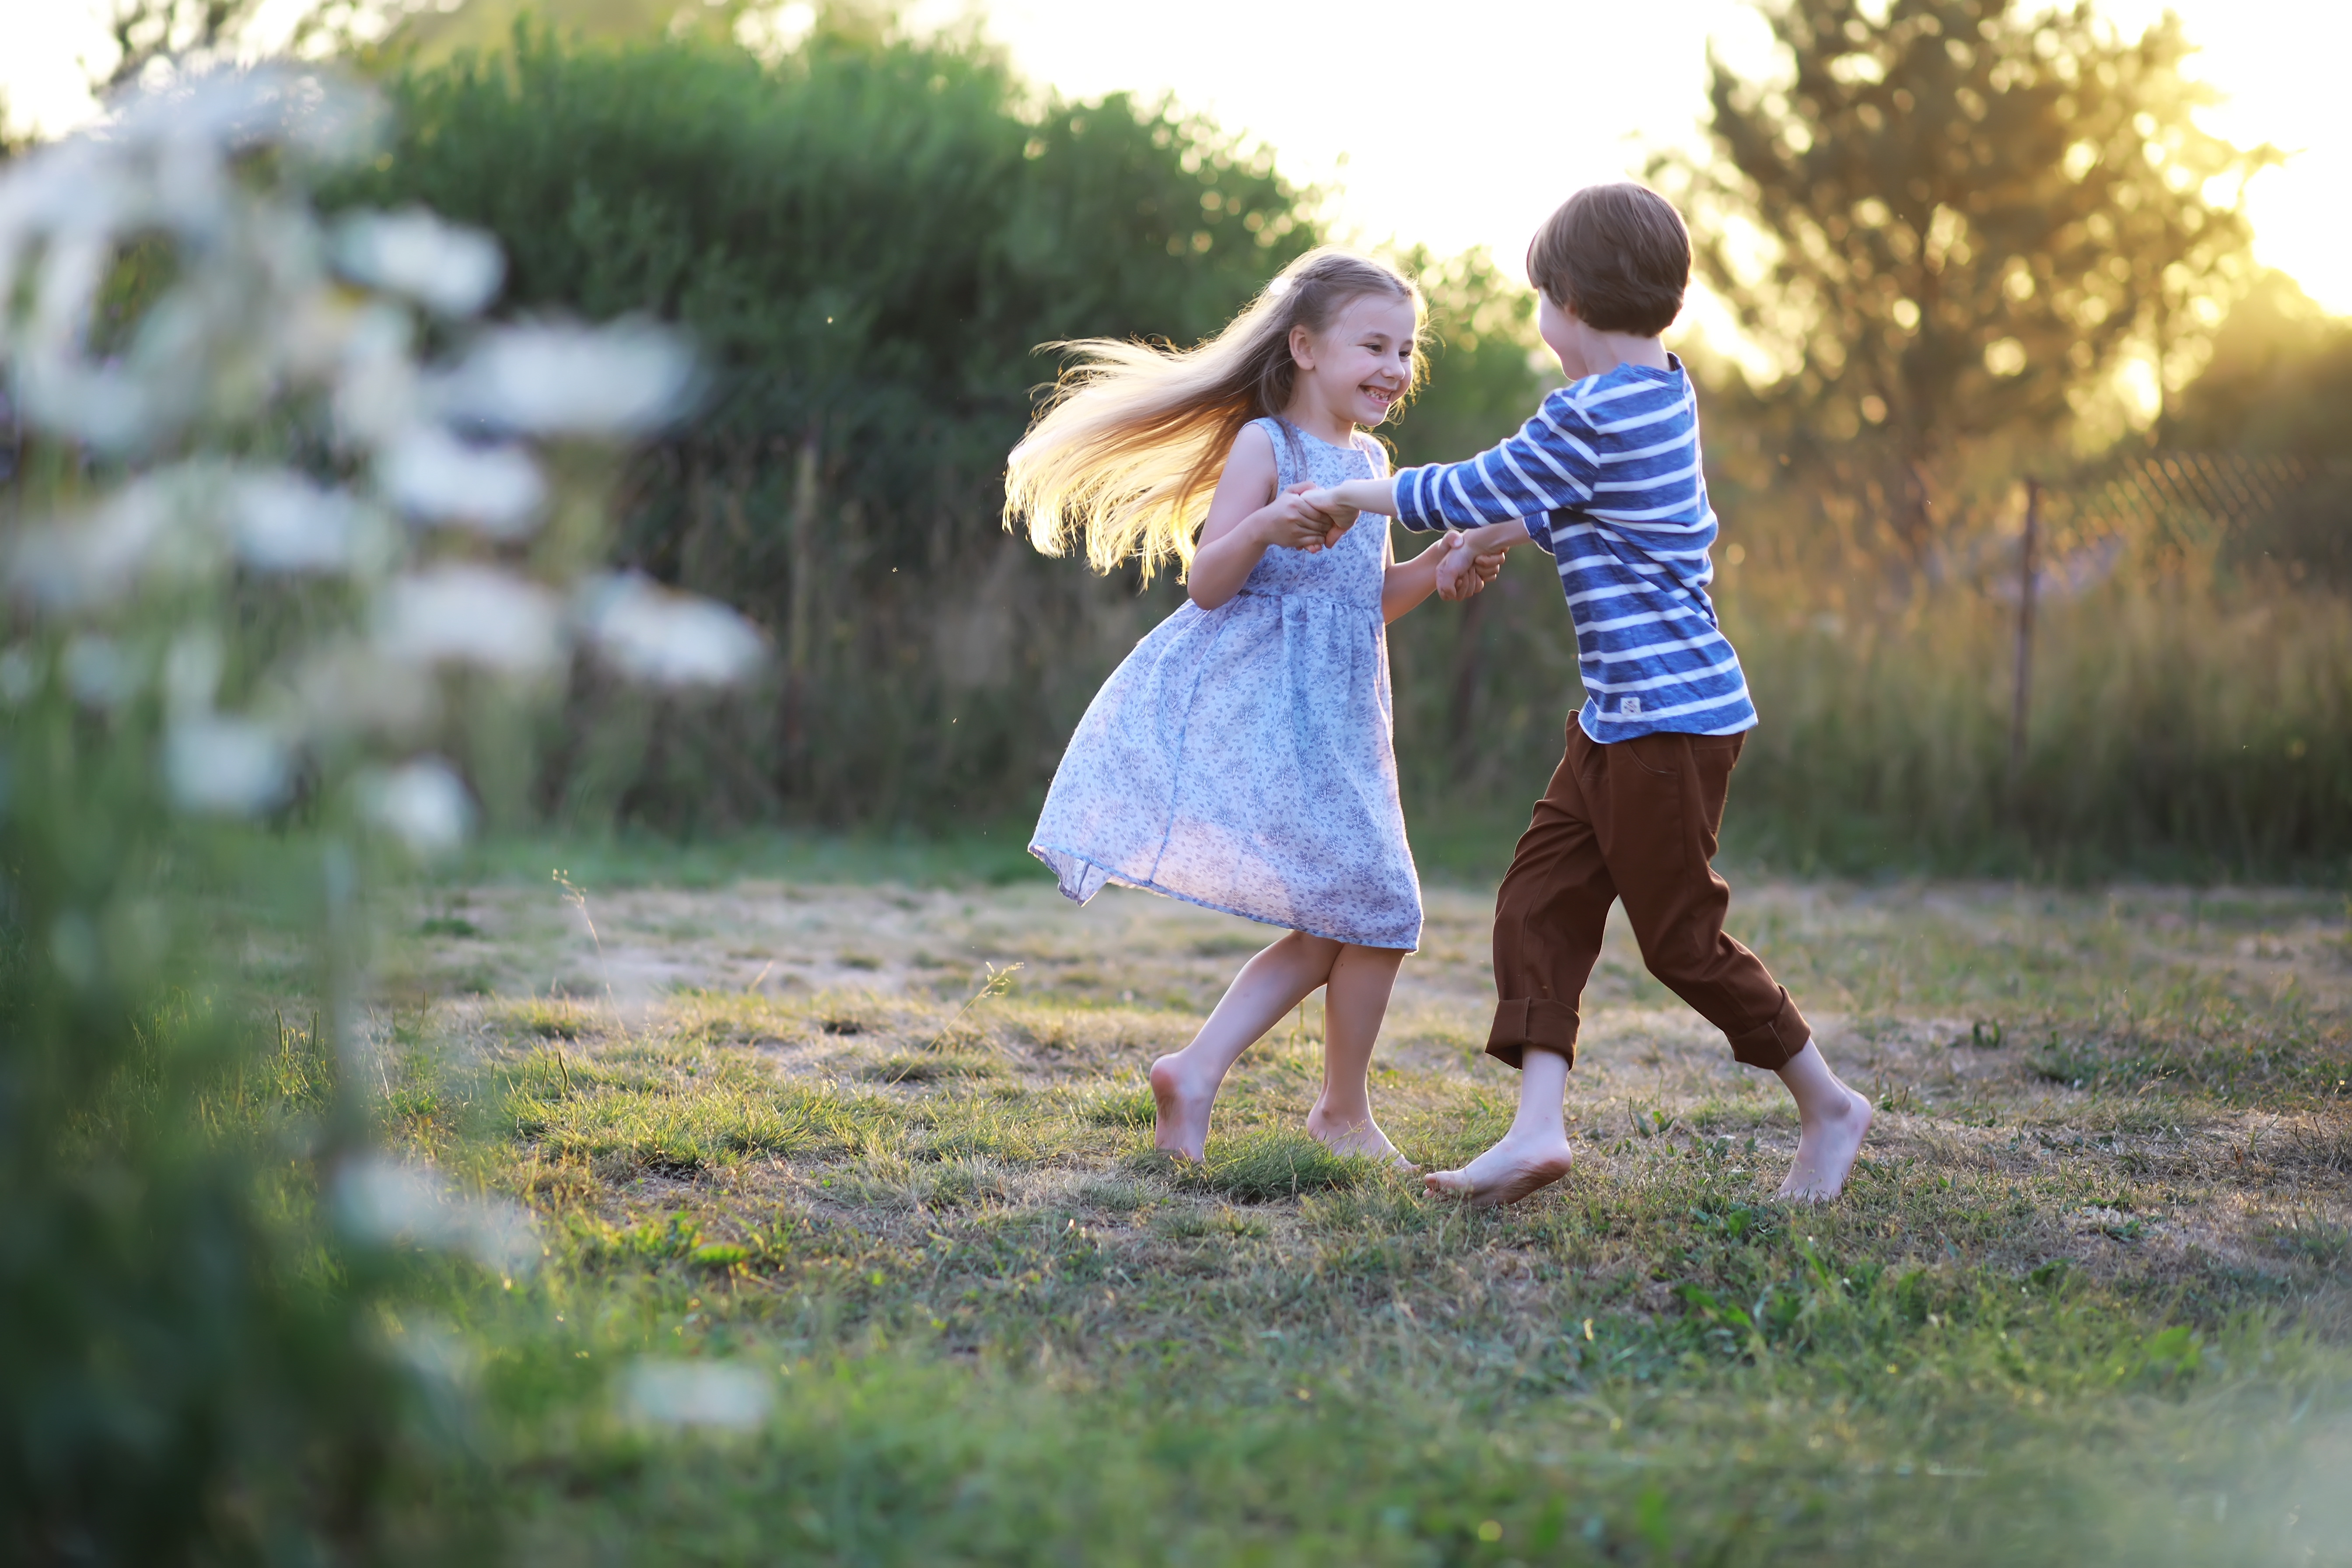 Un niño es fotografiado jugando con una niña en un parque. | Foto: Shutterstock